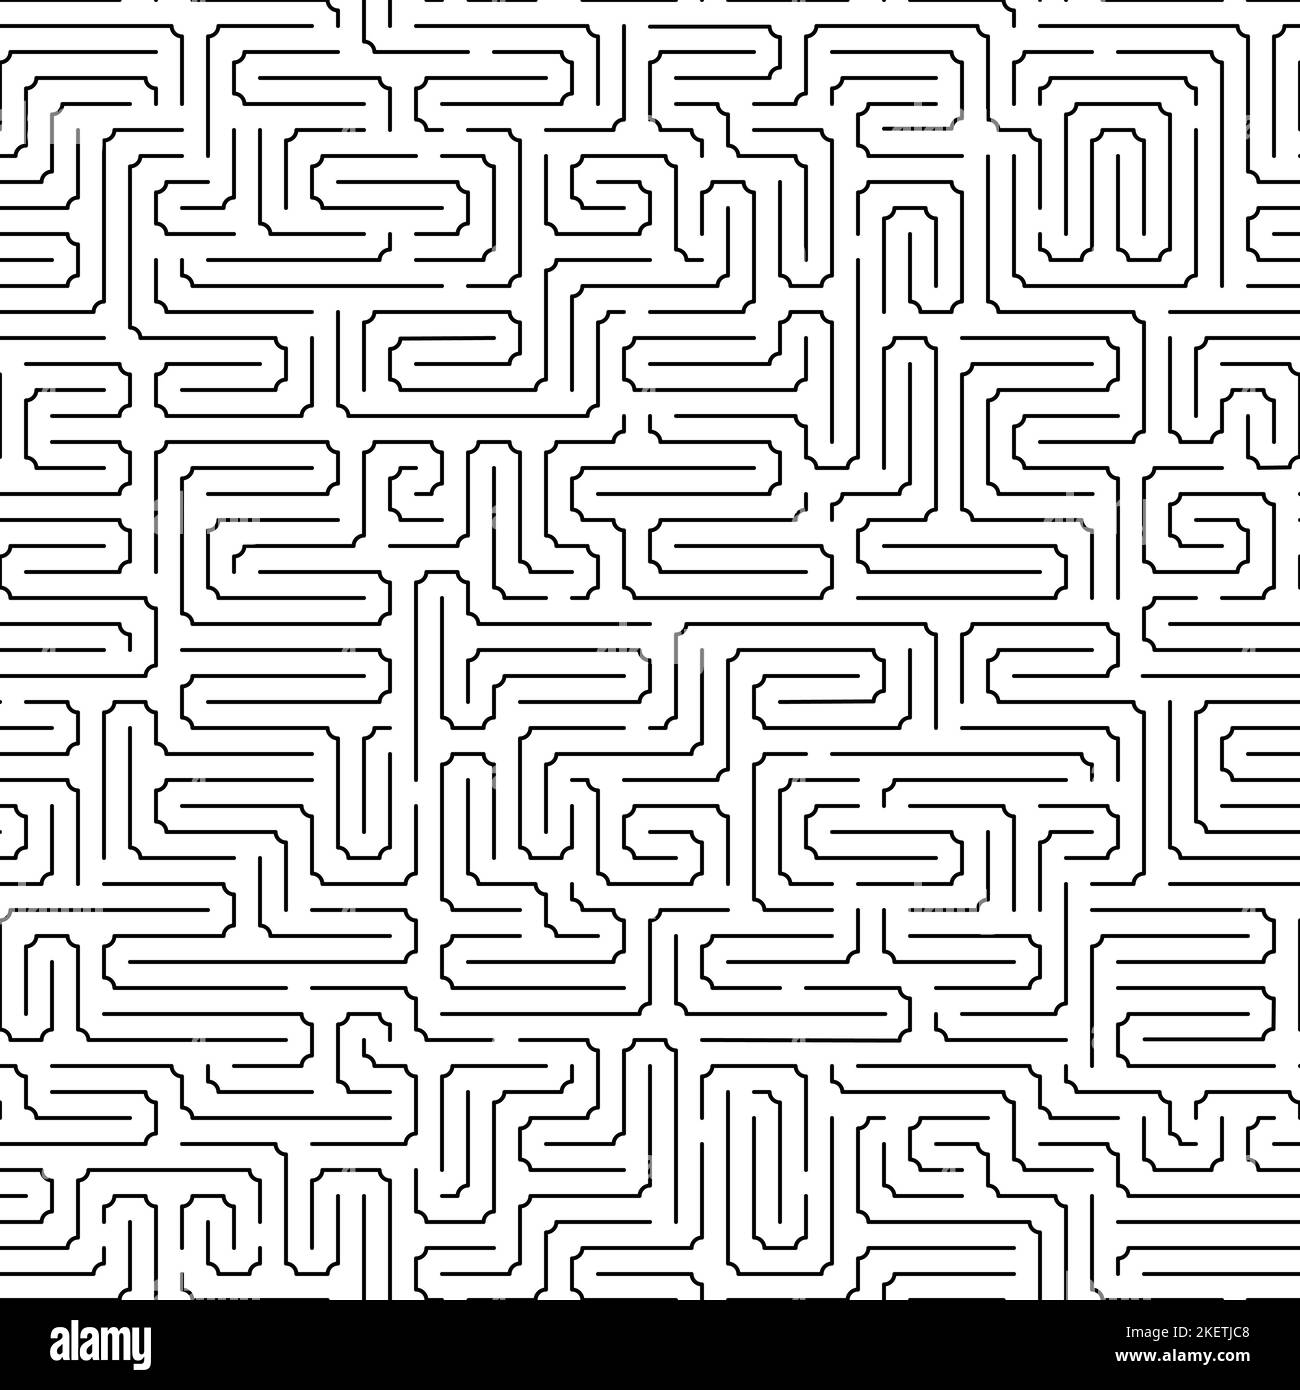 Einfaches Vektor-nahtloses monochromes Muster aus Linien und Winkeln. Vektor nahtloses Schwarz-Weiß-Muster aus dünnen Linien und Ecken mit abgerundeten Kanten. Stock Vektor